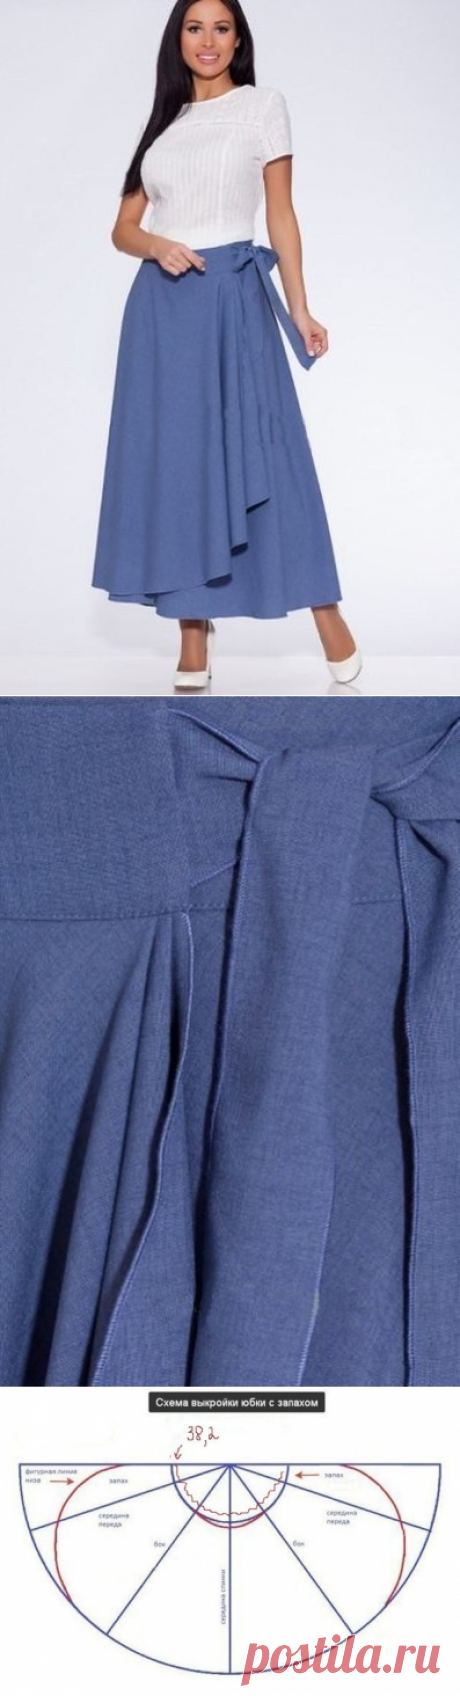 Шьём модную юбку запару часов (Шитье и крой) — Журнал Вдохновение Рукодельницы